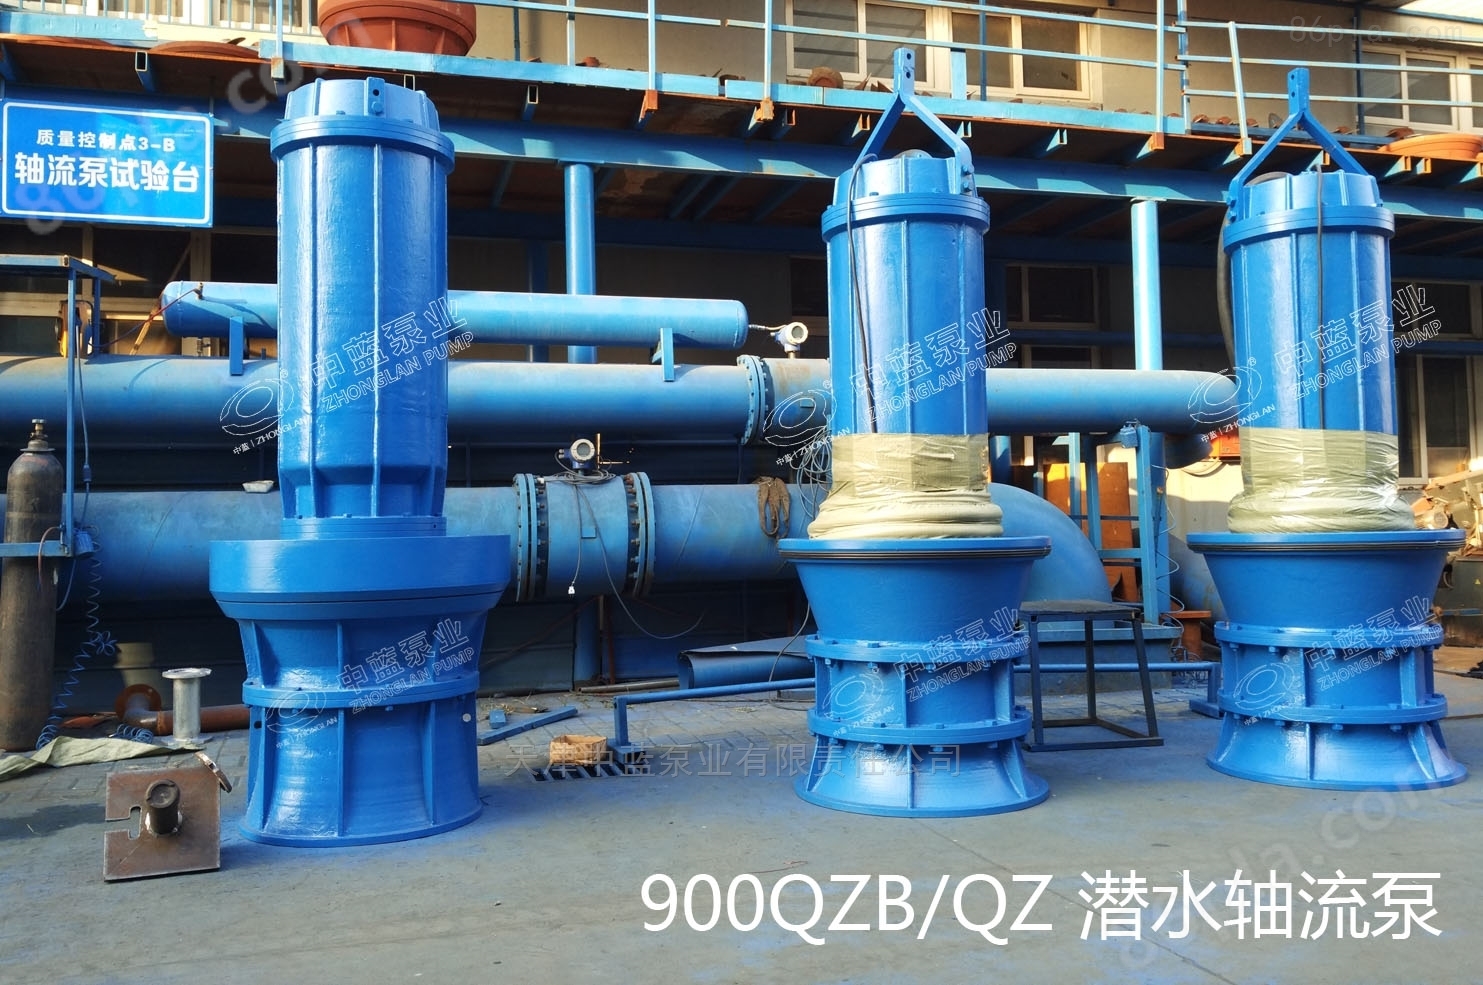 700QZB-70潜水轴流泵价格